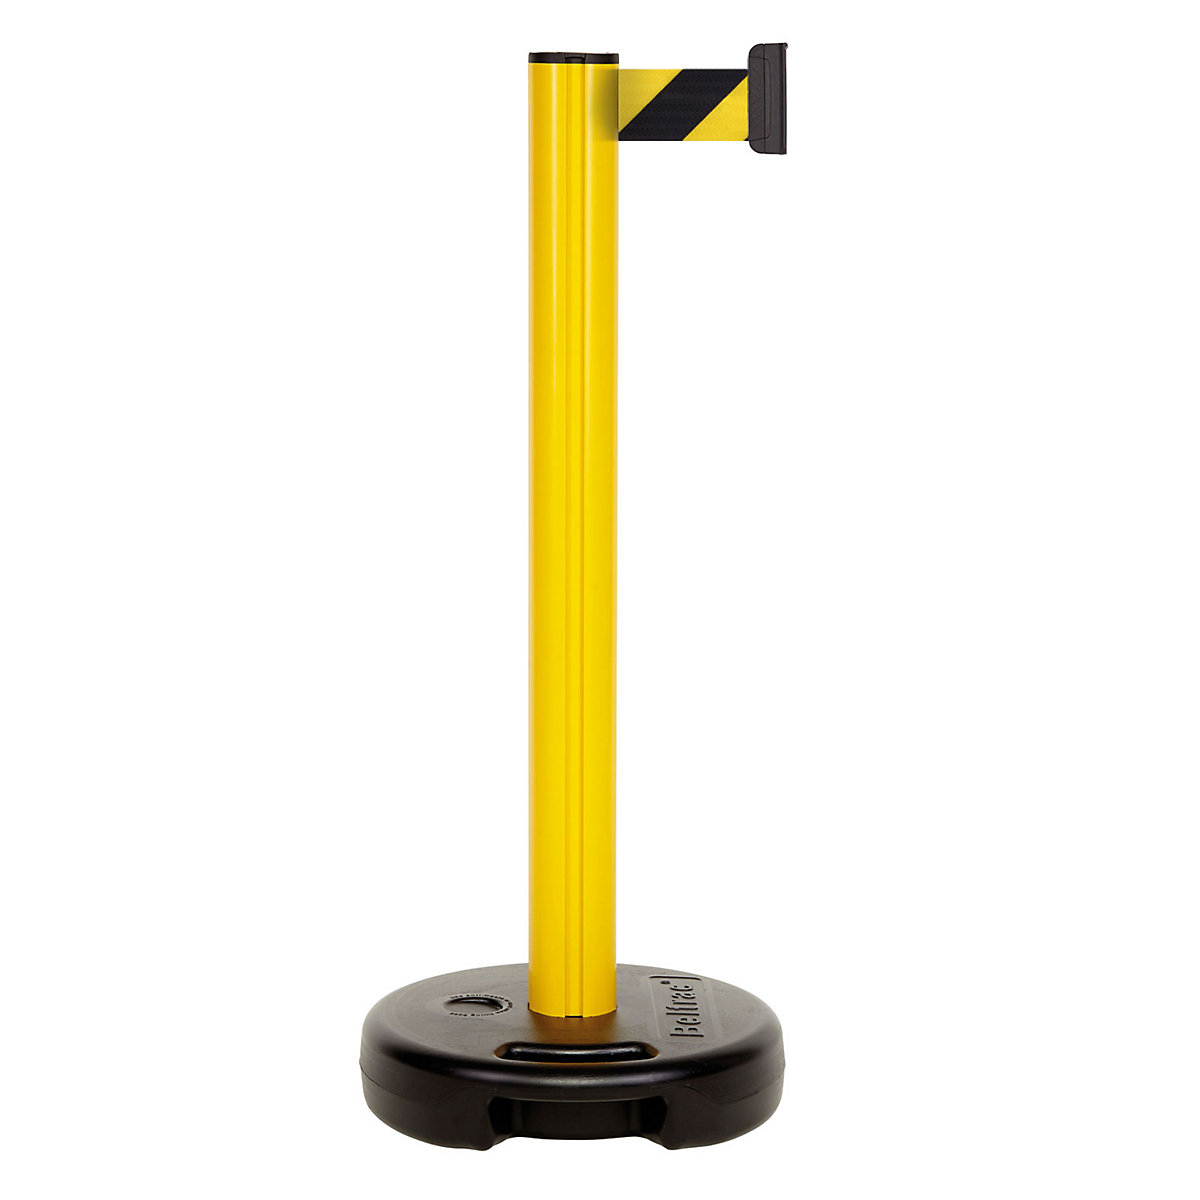 Poste de cinta em plástico, extração máx. da cinta 3700 mm, poste amarelo, cinta amarela / preta-7